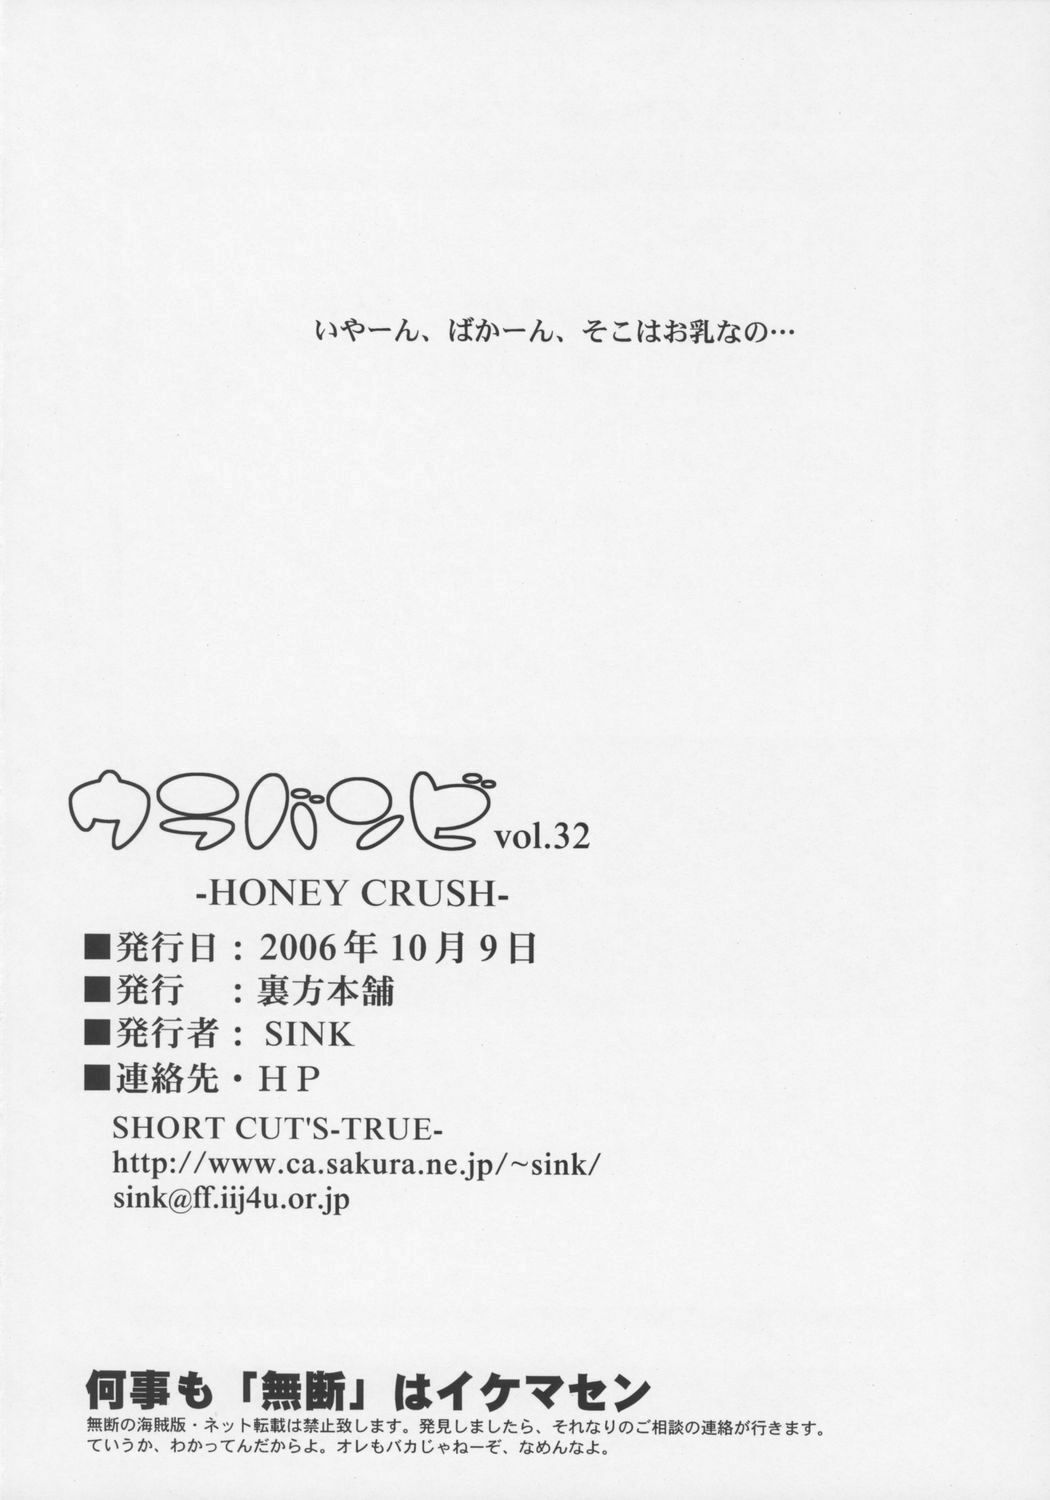 (ABC4) [Urakata Honpo (Sink)] Urabambi Vol. 32 - Honey Crush (Cutey Honey) page 25 full